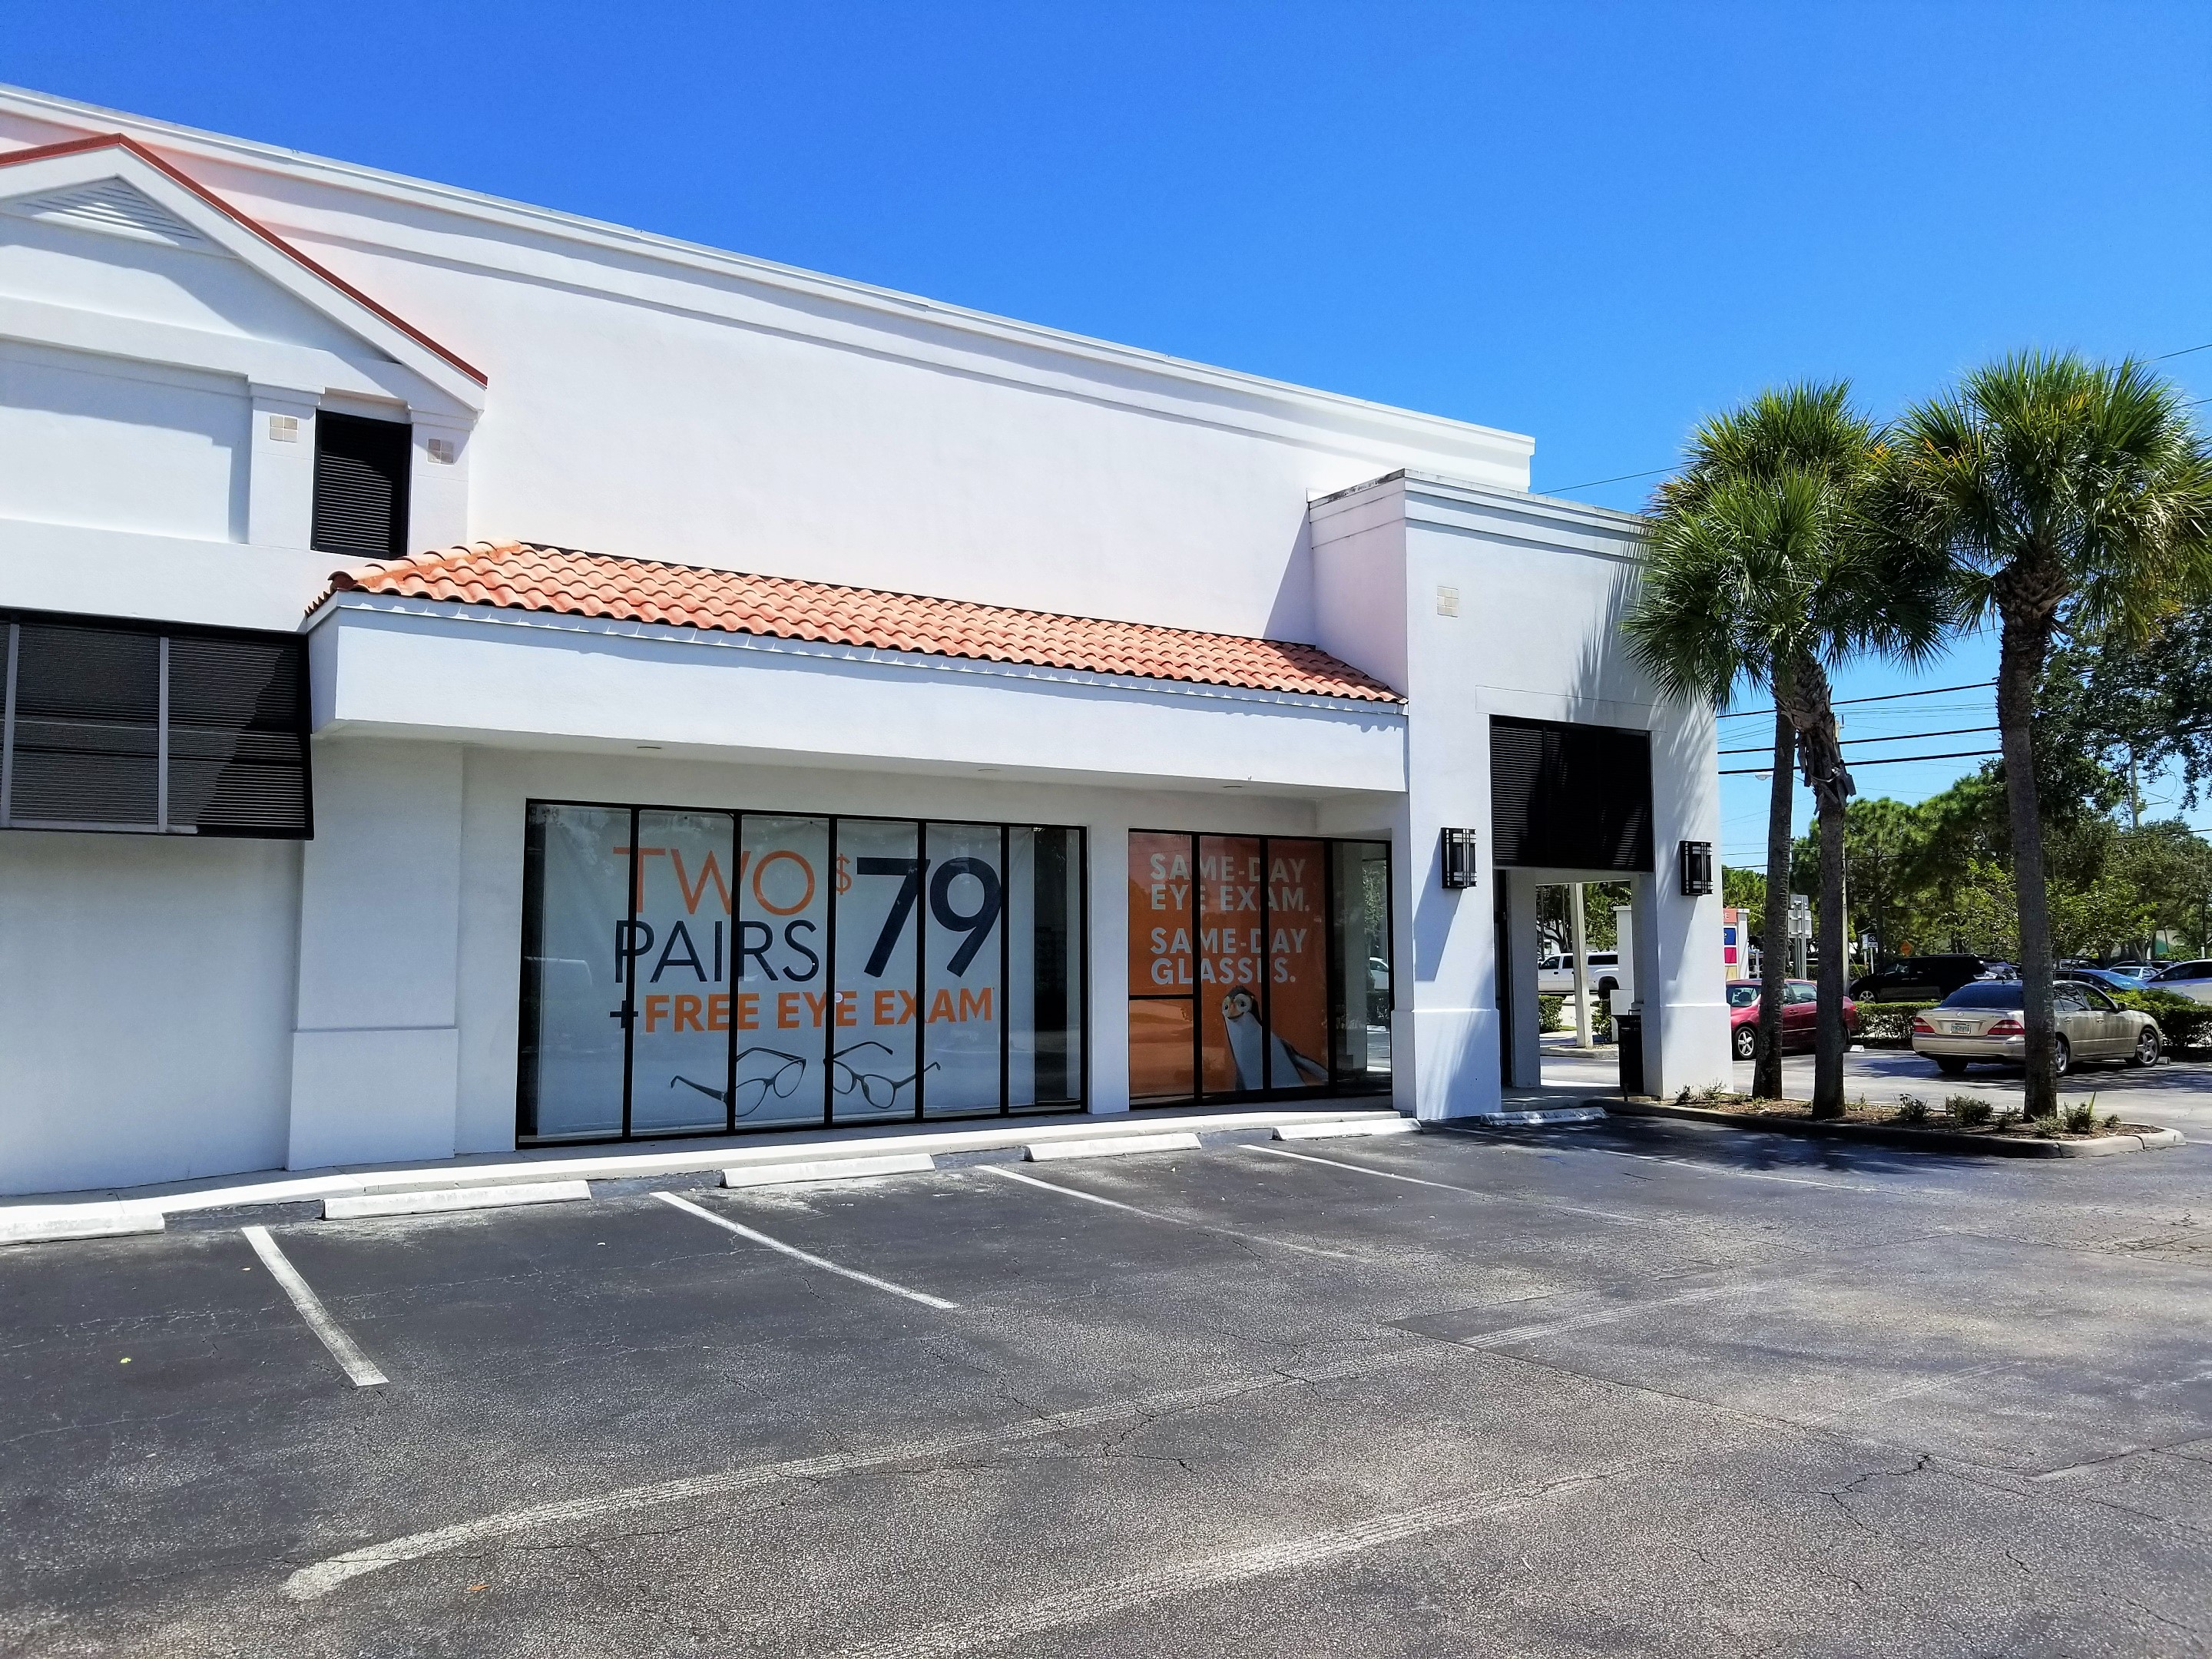 Storefront at Stanton Optical store in Jupiter, FL 33458